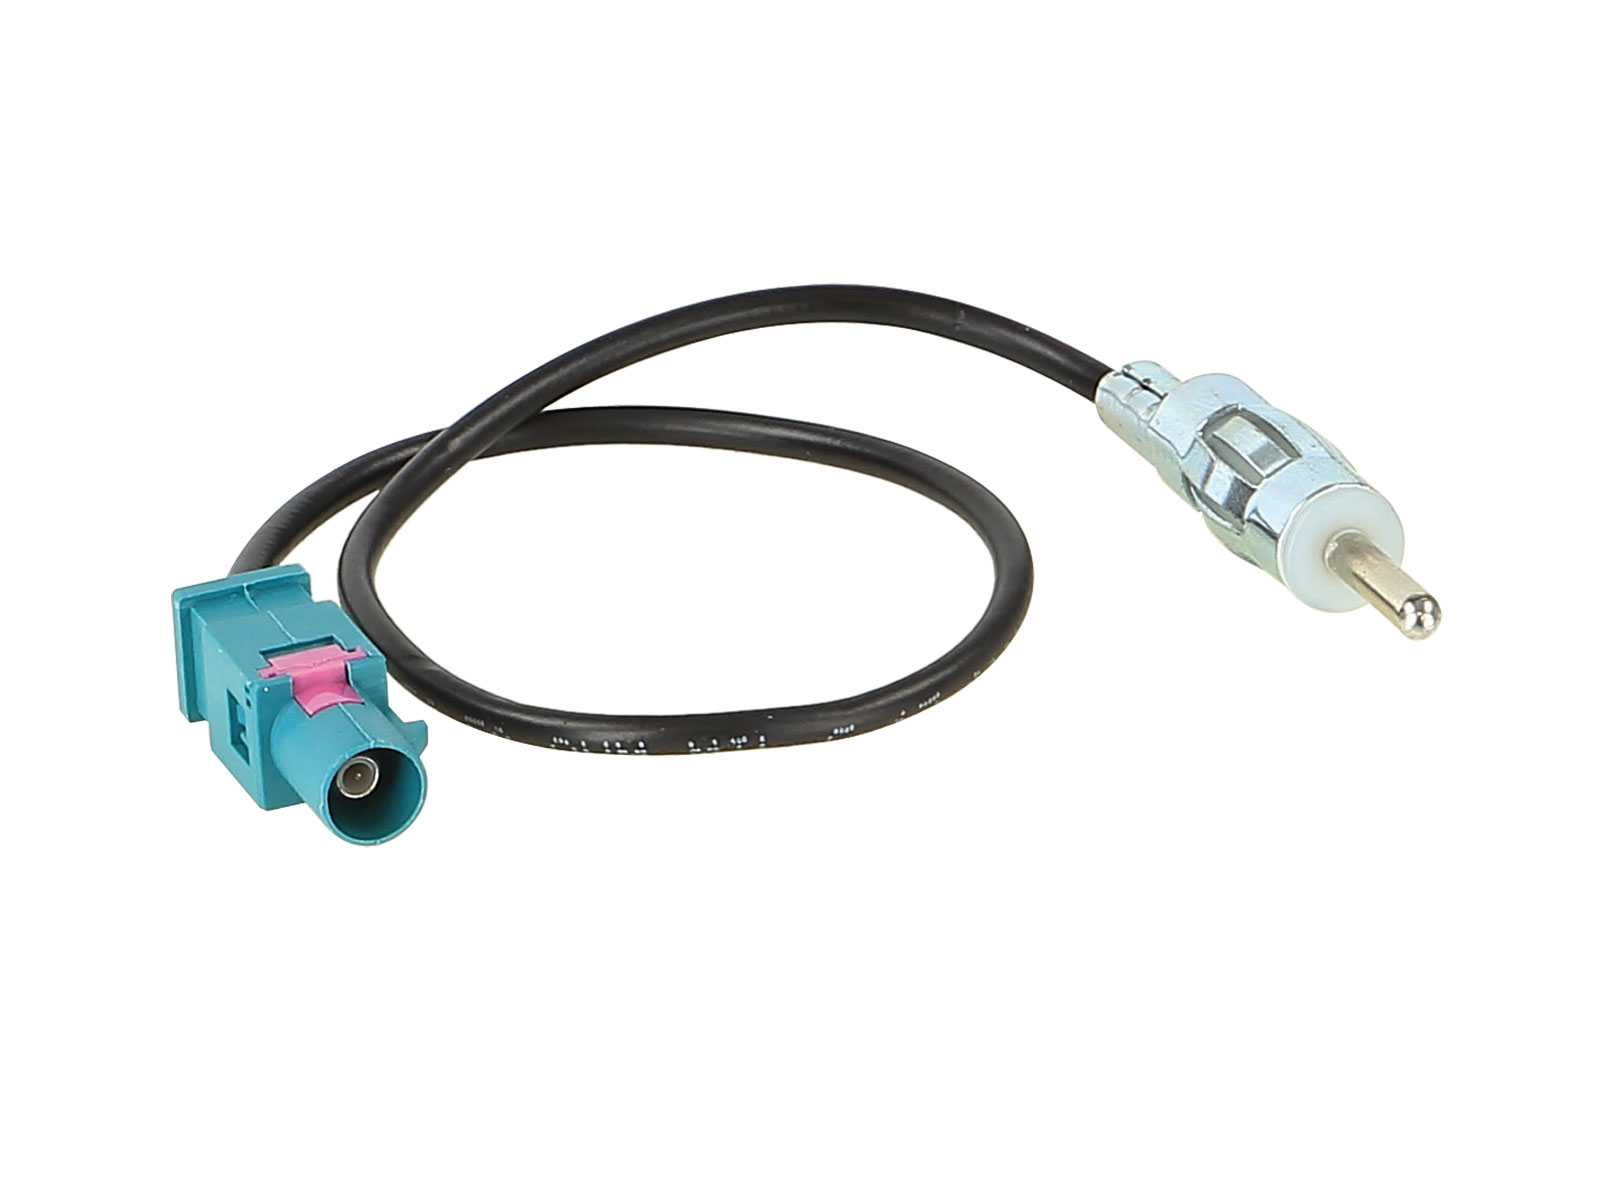 Antennenadapter kompatibel mit VW ab Bj. 2002 adaptiert von Fakra (m) auf DIN (m)